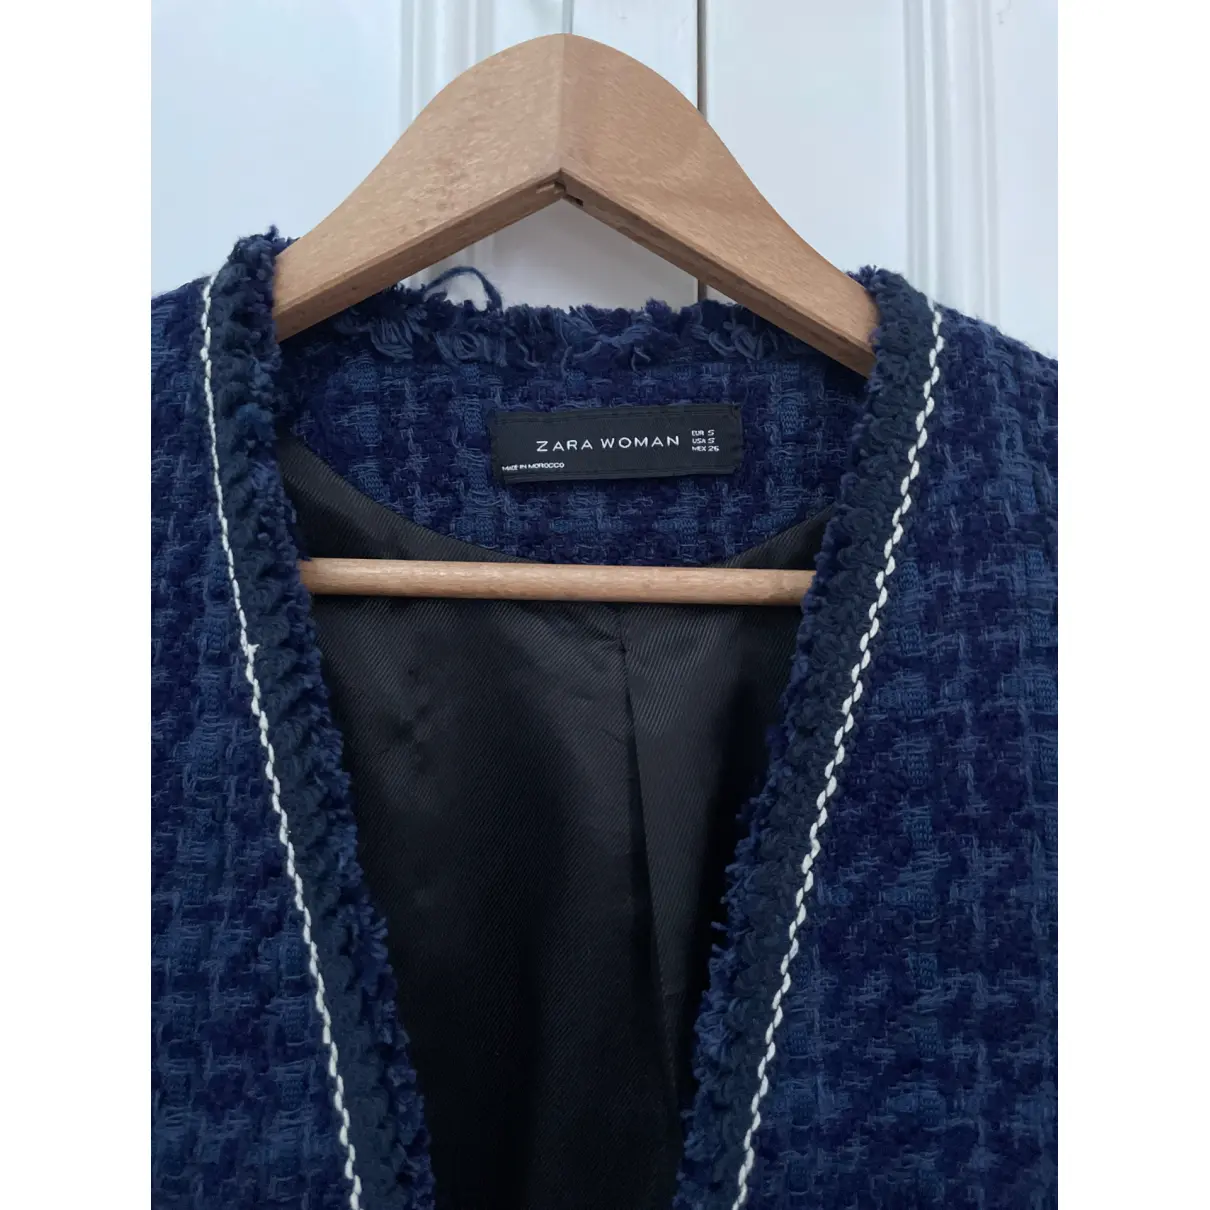 Buy Zara Tweed blazer online